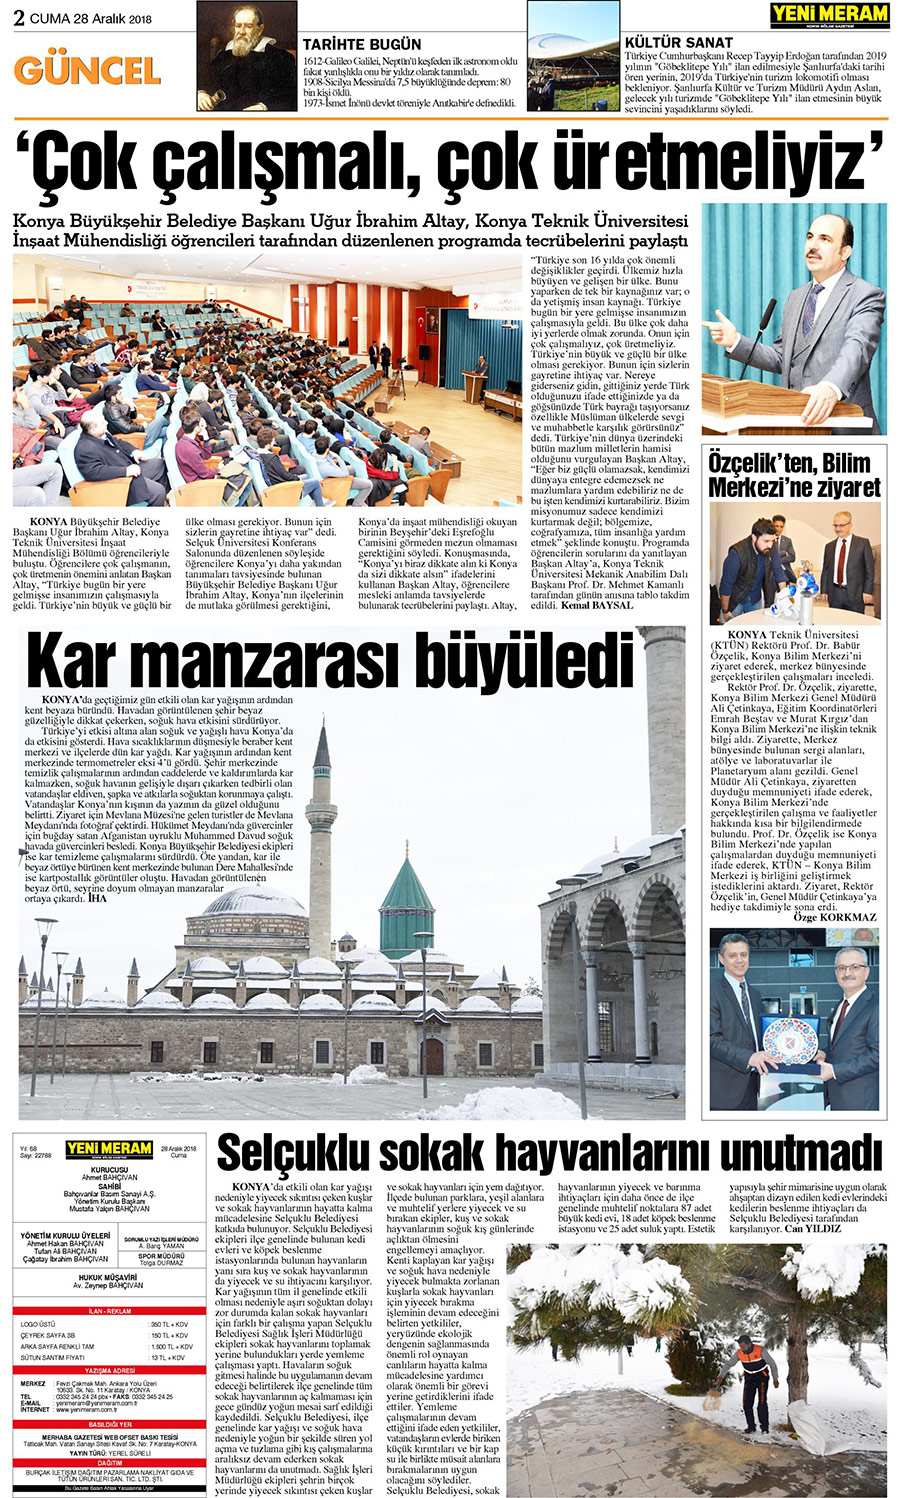 28 Aralık 2018 Yeni Meram Gazetesi